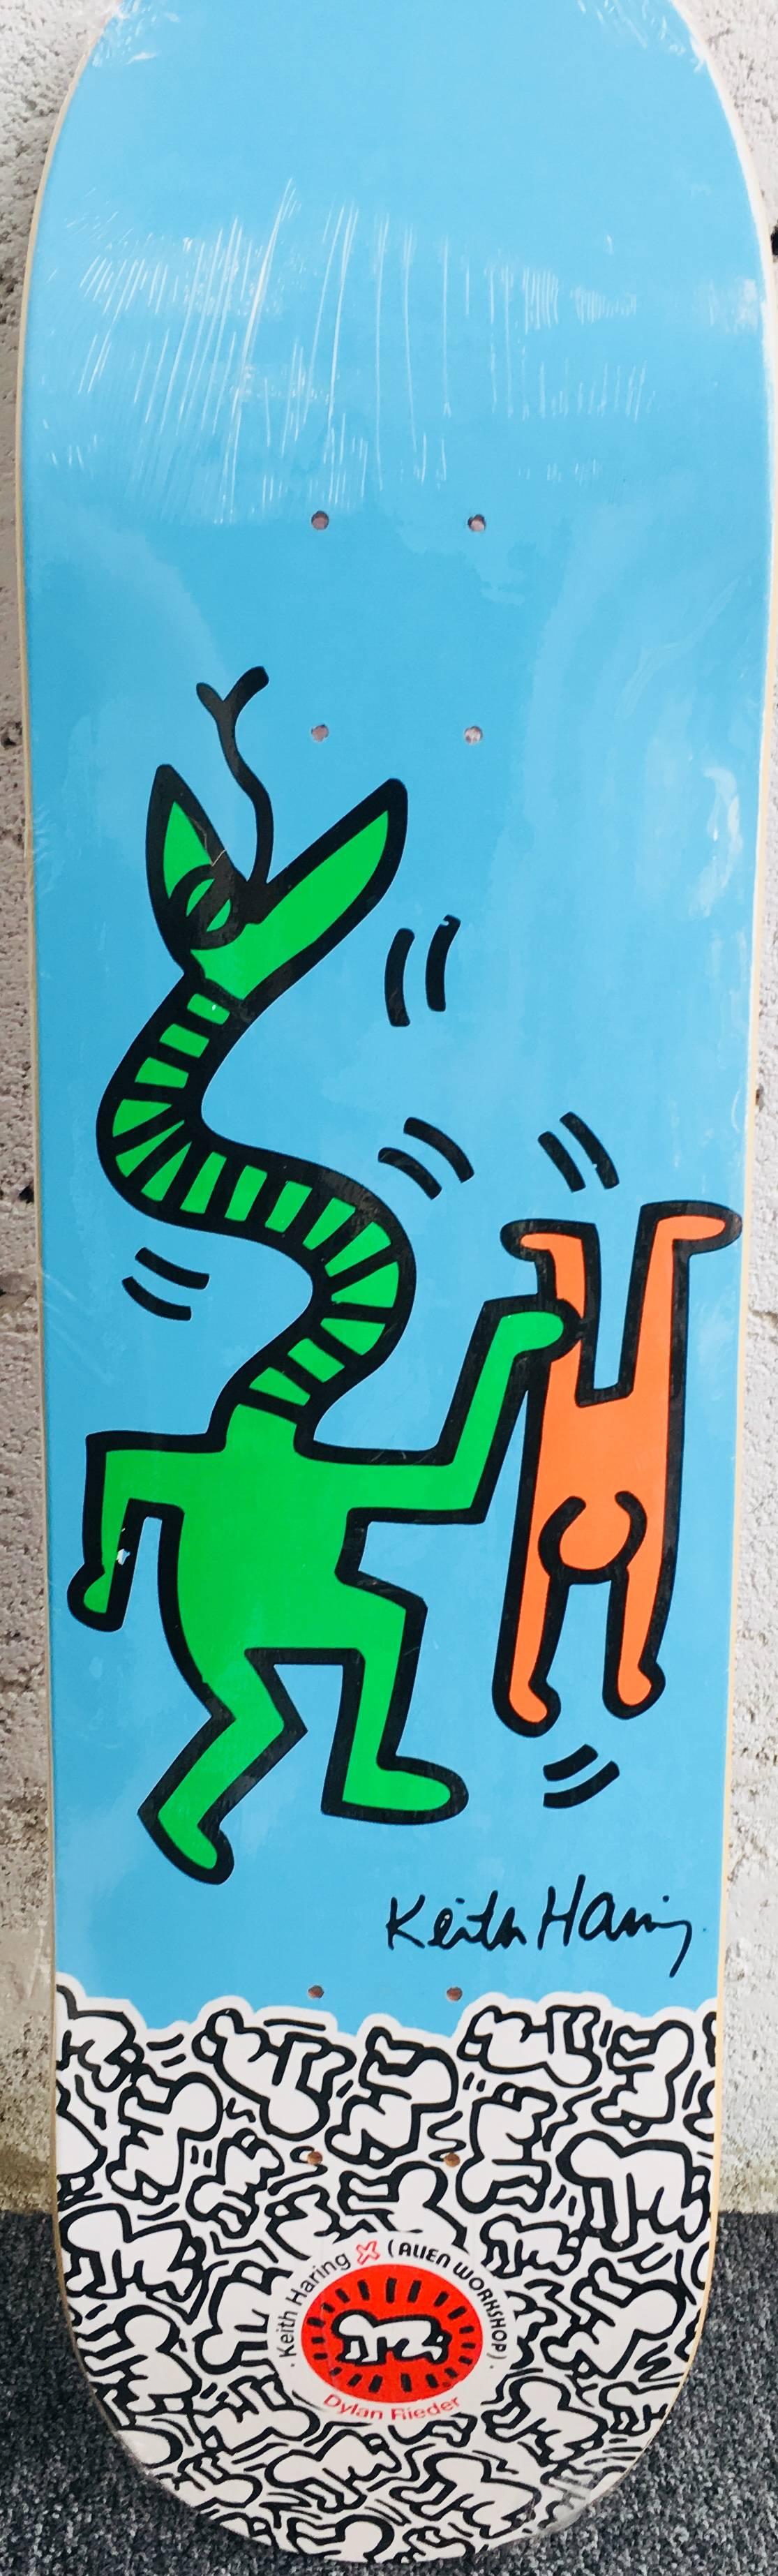 Keith Haring set of 10 skateboard decks (Keith Haring alien workshop) 2